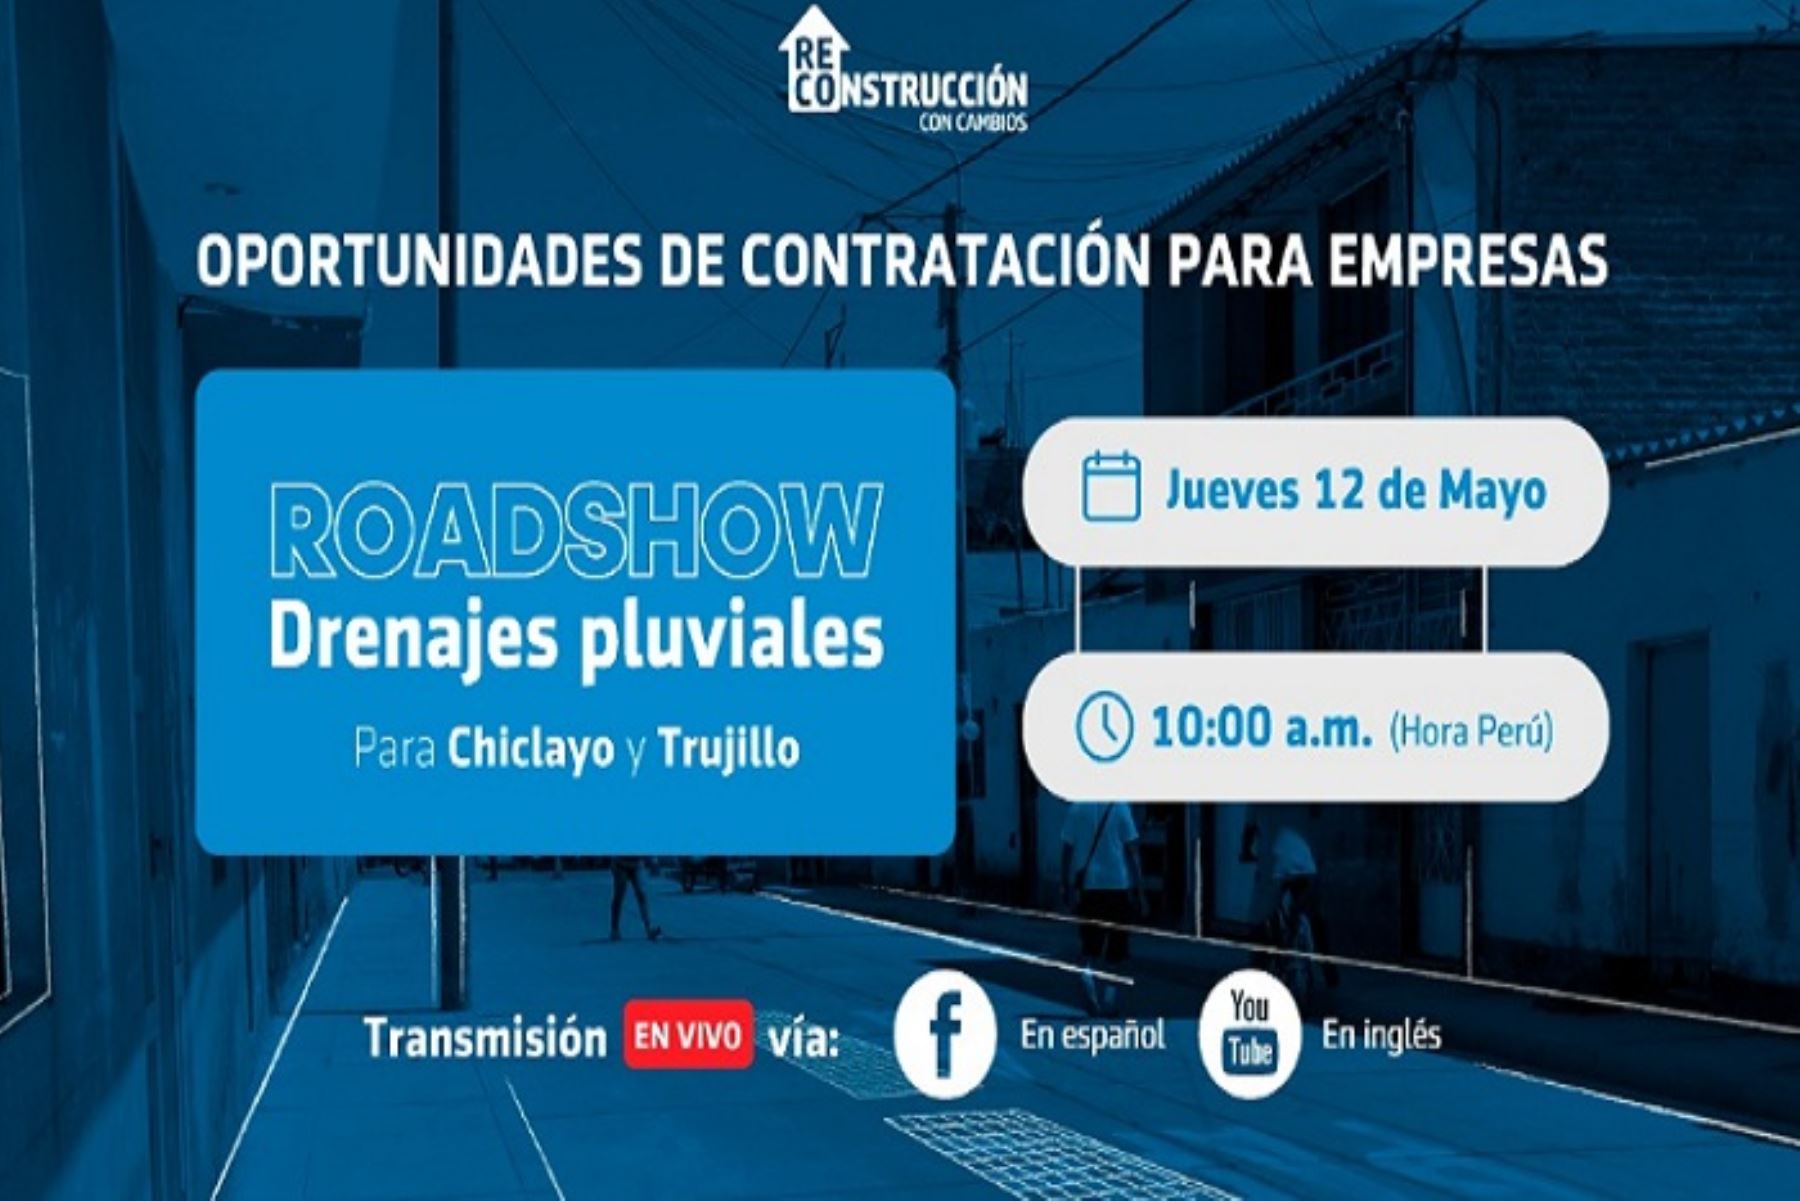 ARCC organiza Roadshow para ejecutar drenajes pluviales en Chiclayo y Trujillo |  información